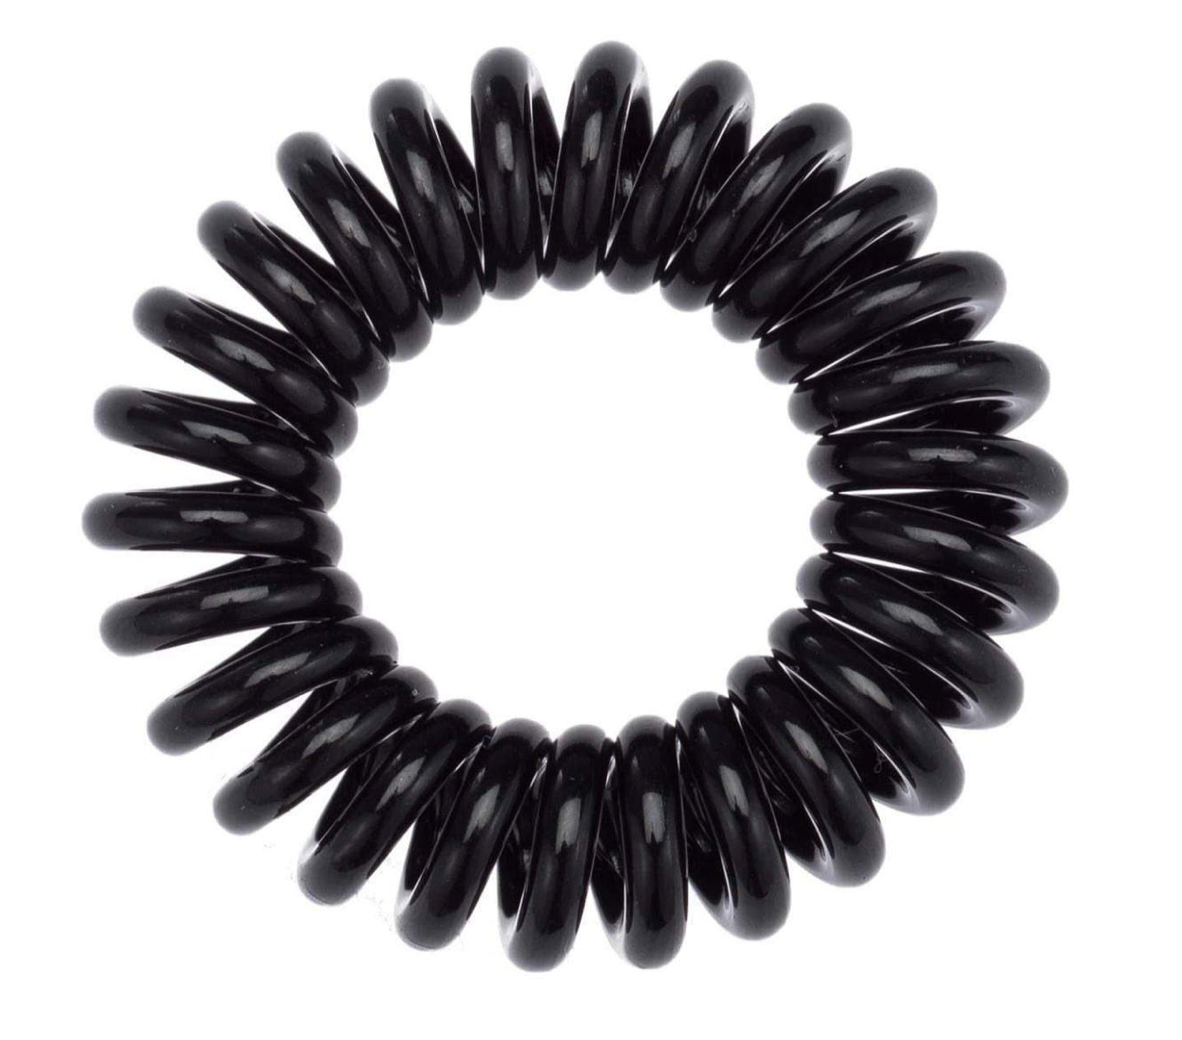 Black Coil Hair Ties (Pack of 8)